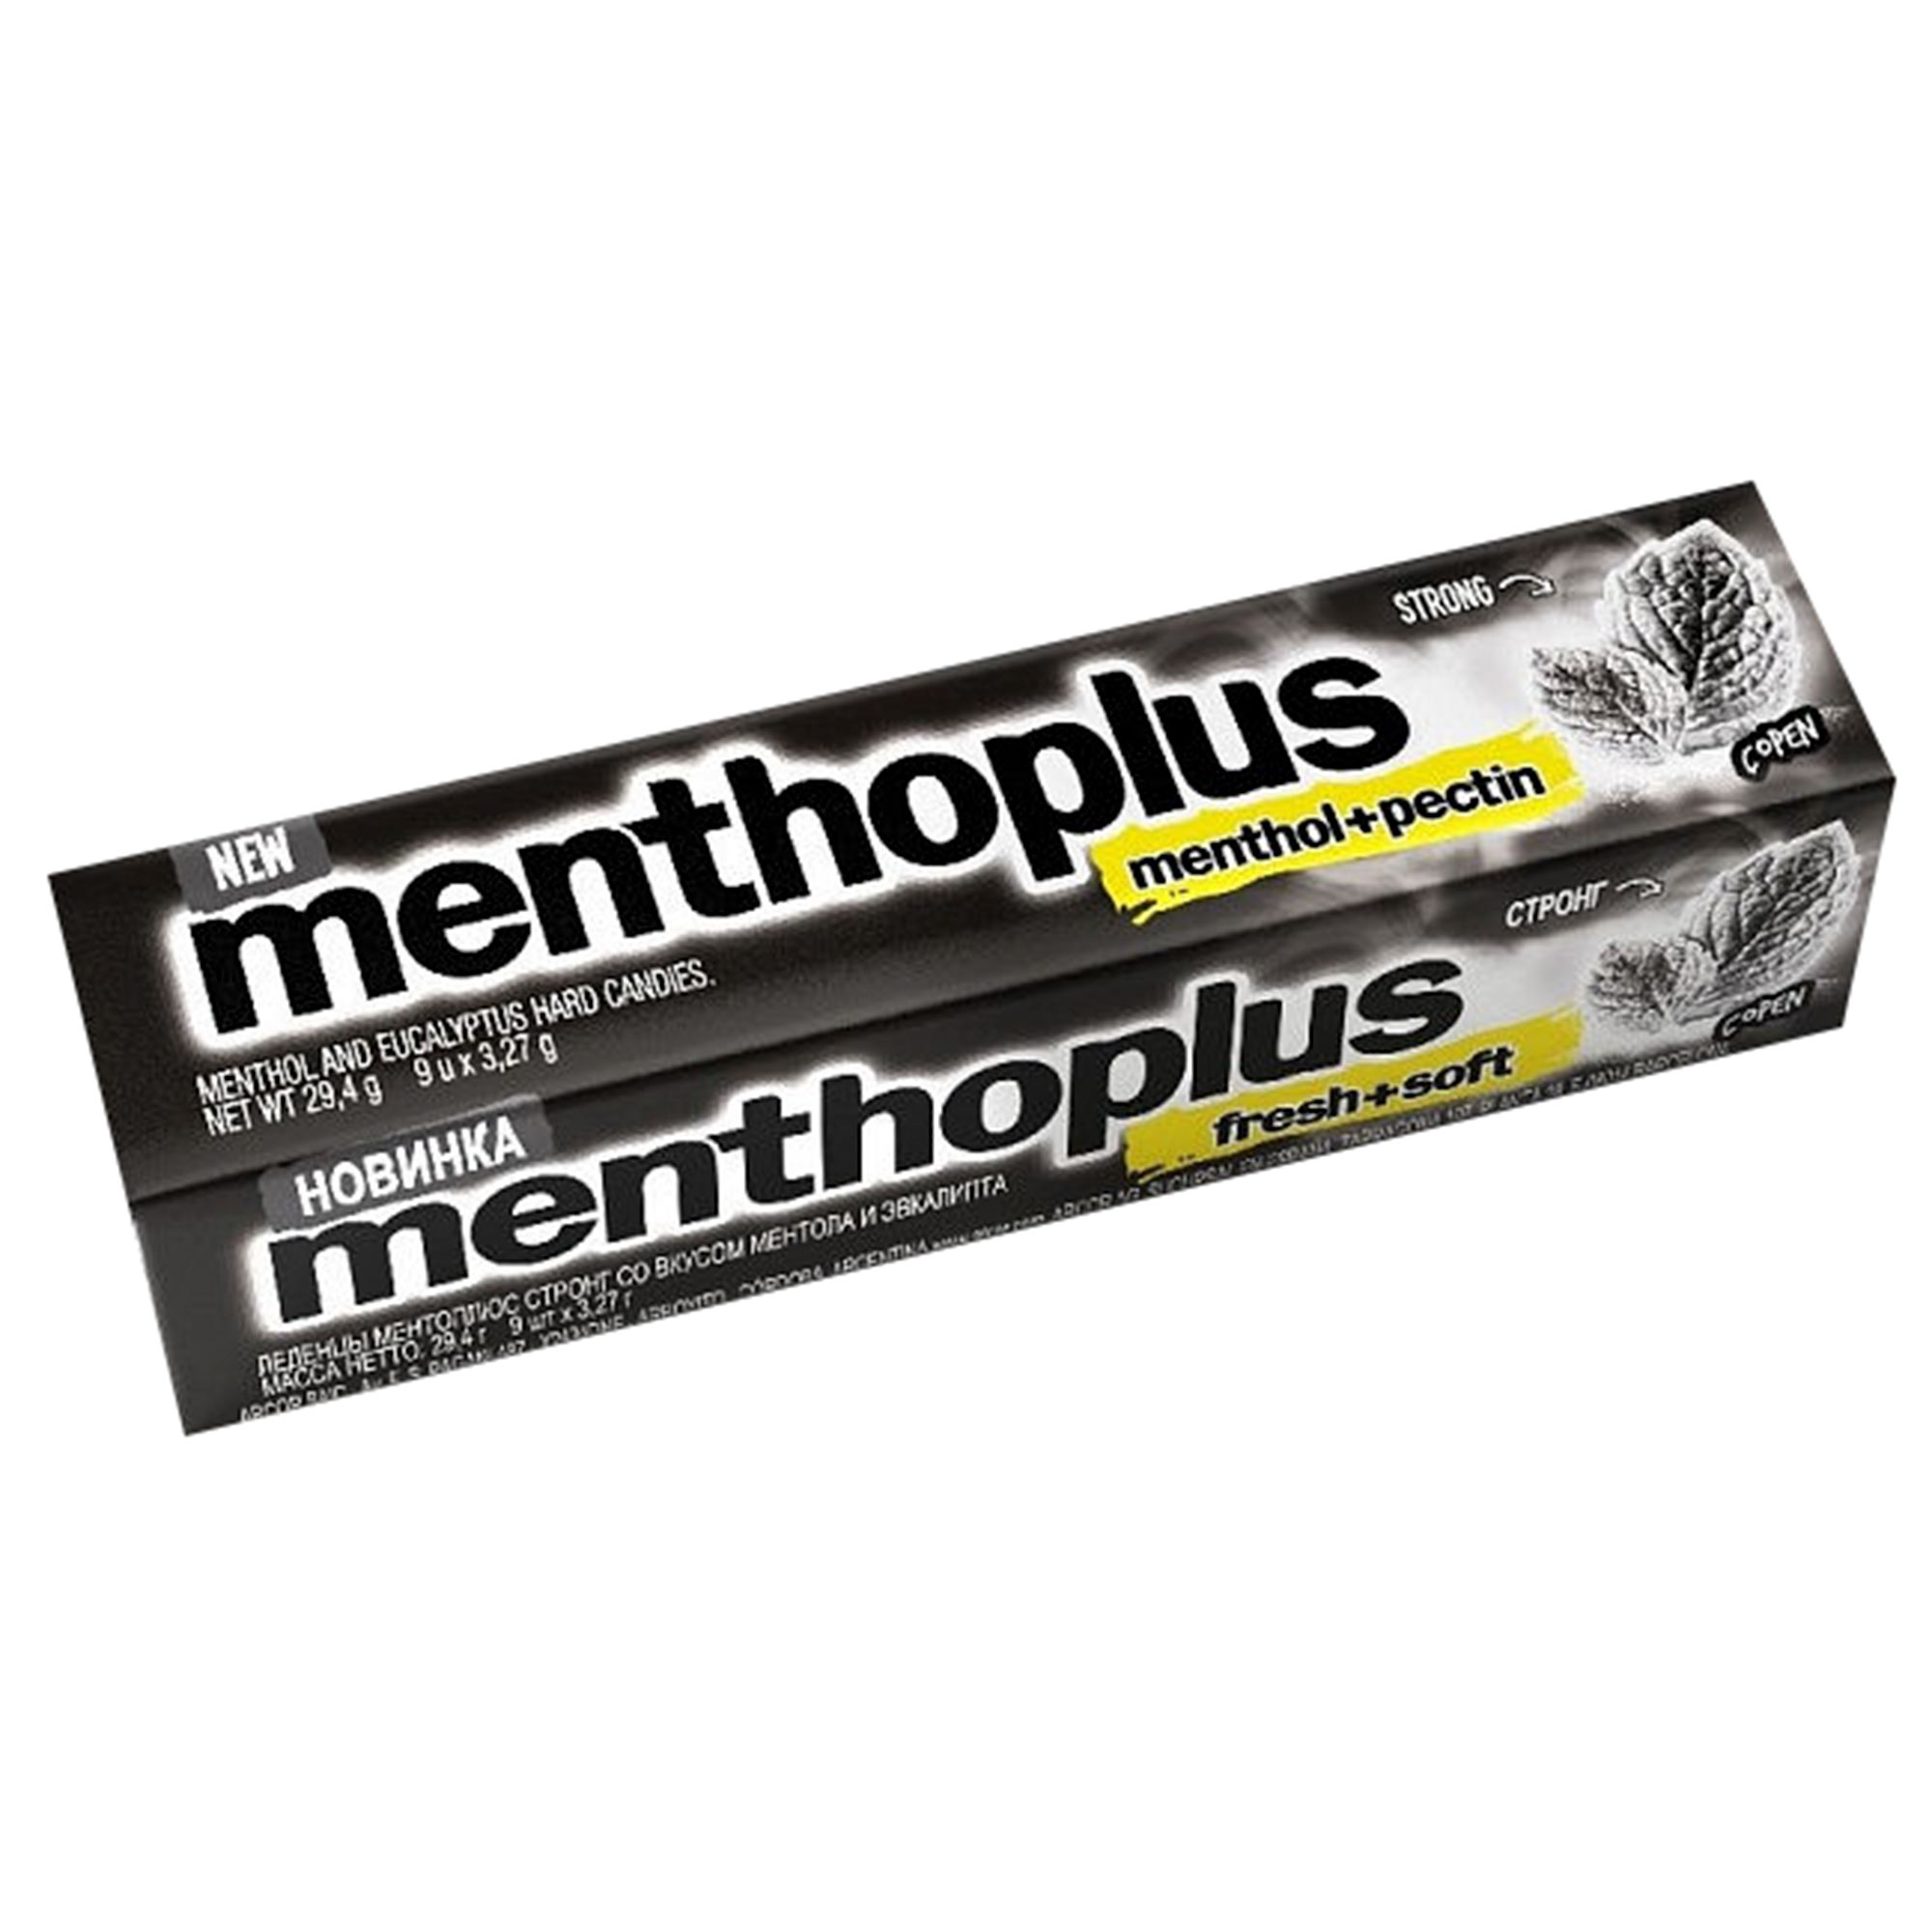 Леденцы Menthoplus STRONG  29,4 г леденцы halls ментол экстра 24 5 г